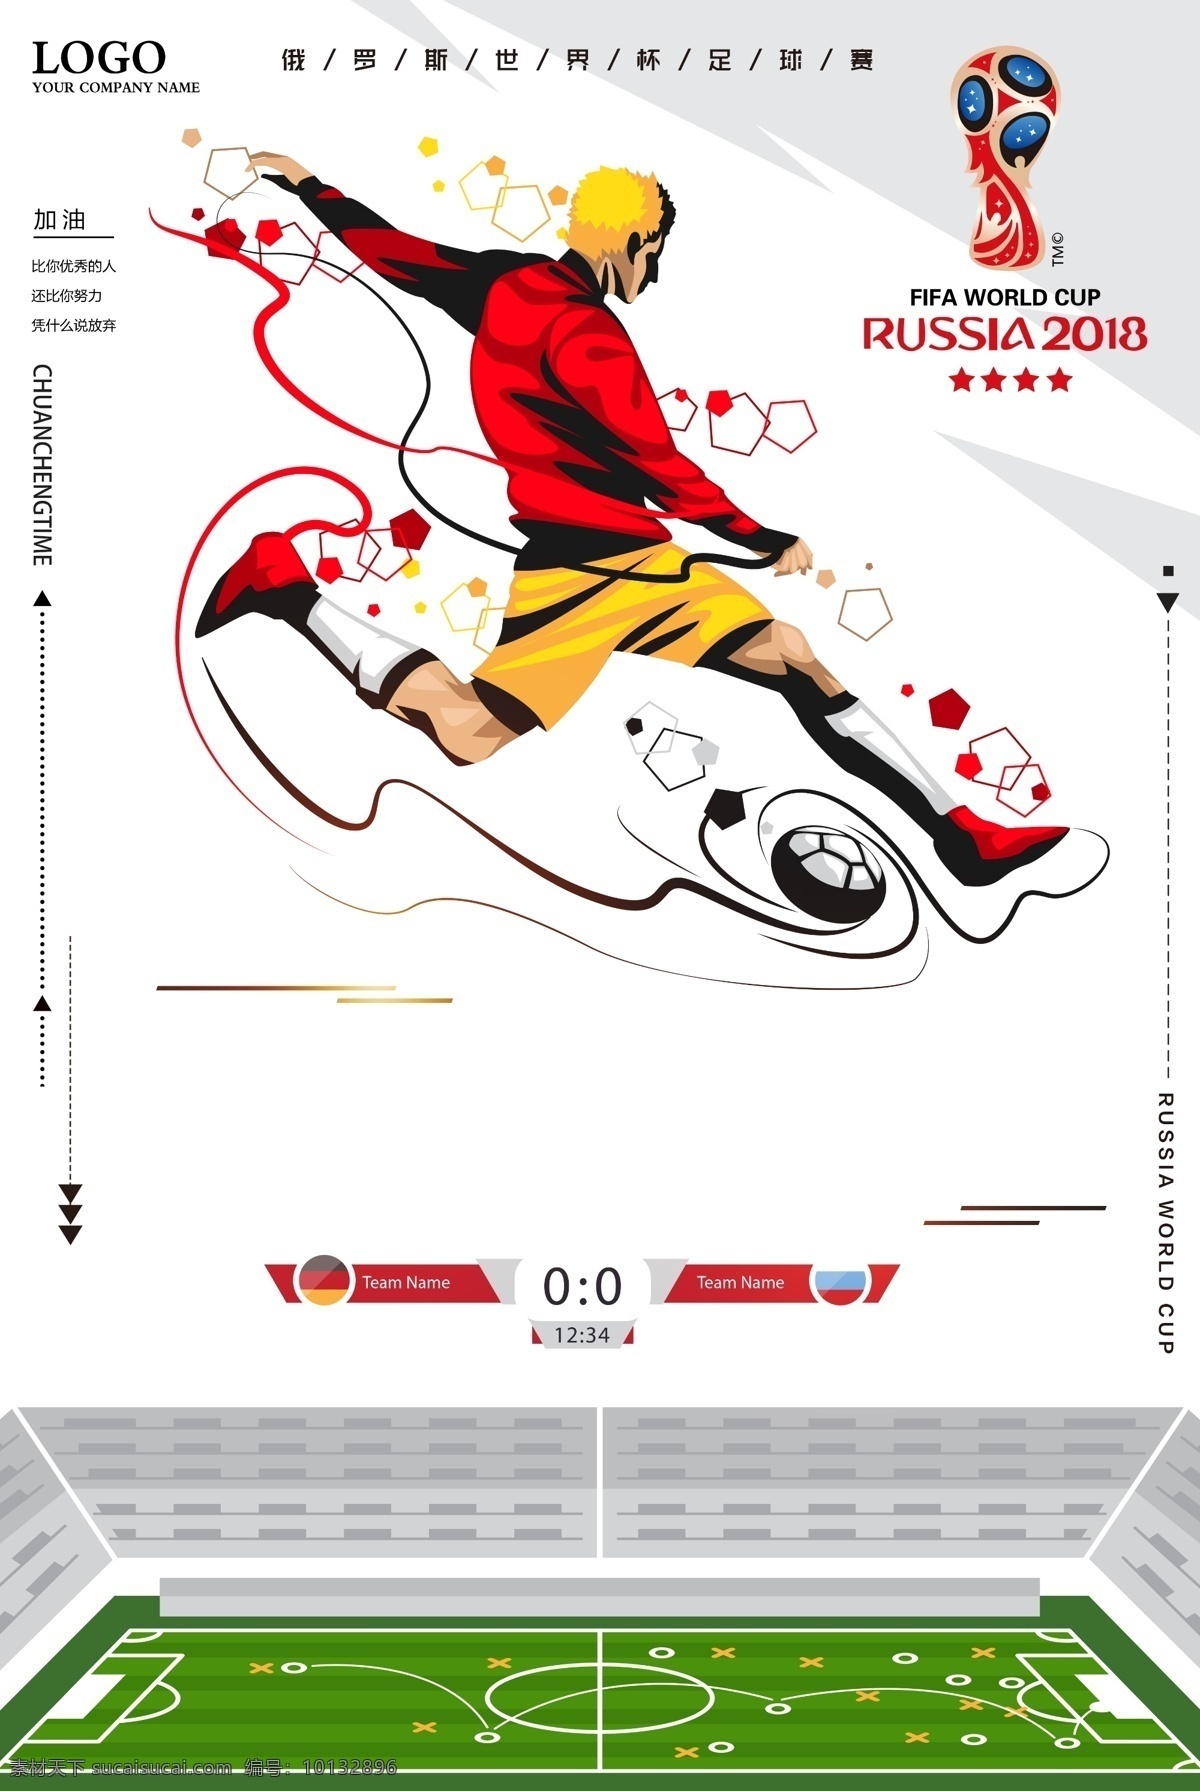 2018 激情 世界杯 俄罗斯 原创 海报 展板 海报背景 淘宝海报 创意海报 俄罗斯世界杯 足球海报 足球比赛 世界杯足球 海报素材 海报模板 卡通海报 模板下载 免费 免费模板 激情世界杯